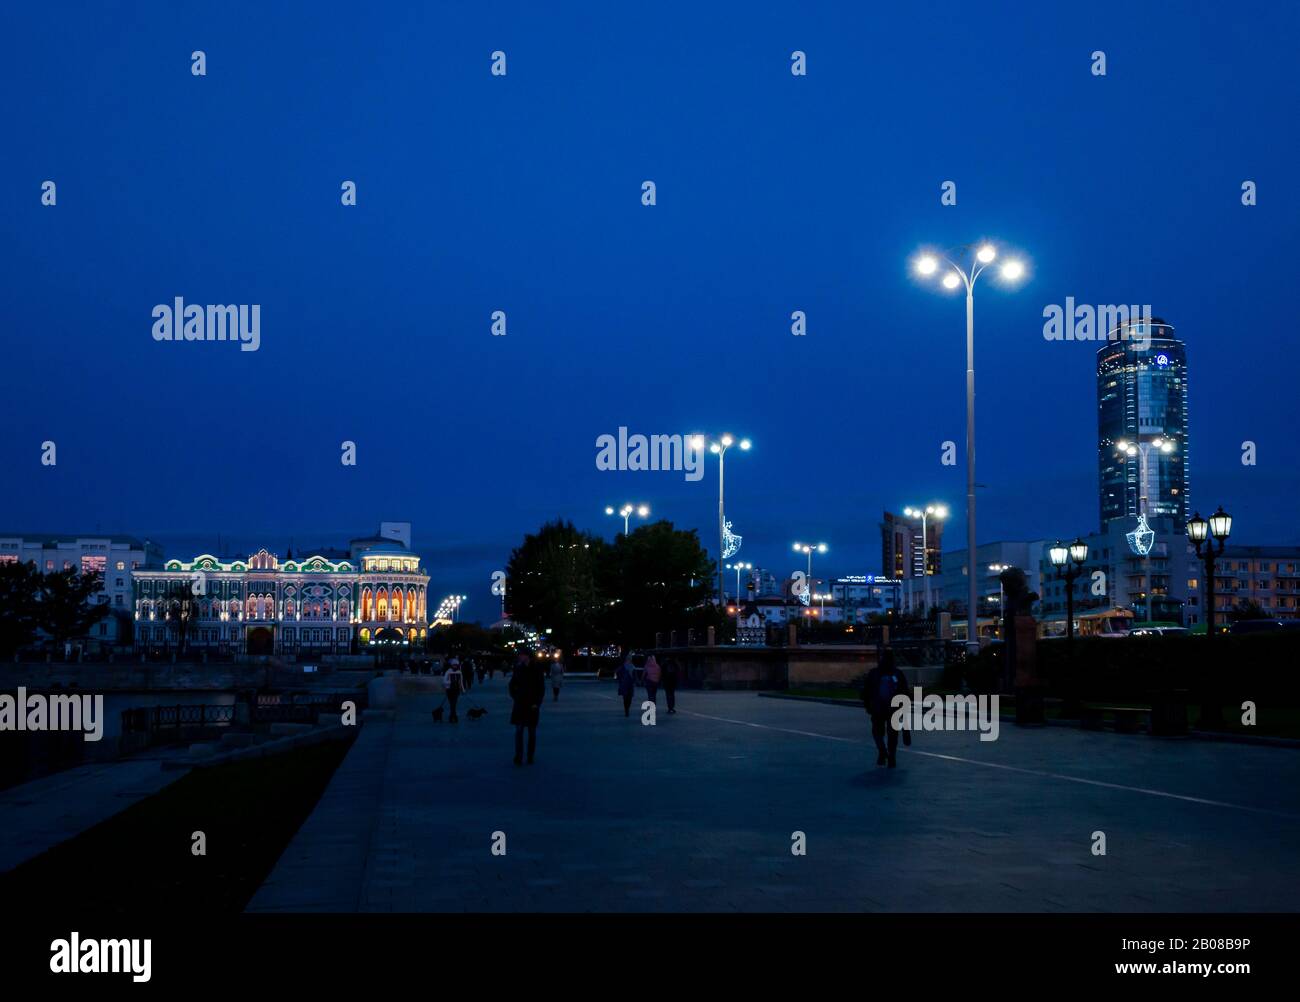 Die Leute, die nachts mit dem Sevastyanova Haus spazieren, beleuchteten die Lenin-Allee, Jekaterinburg, Sibirien, Russland Stockfoto